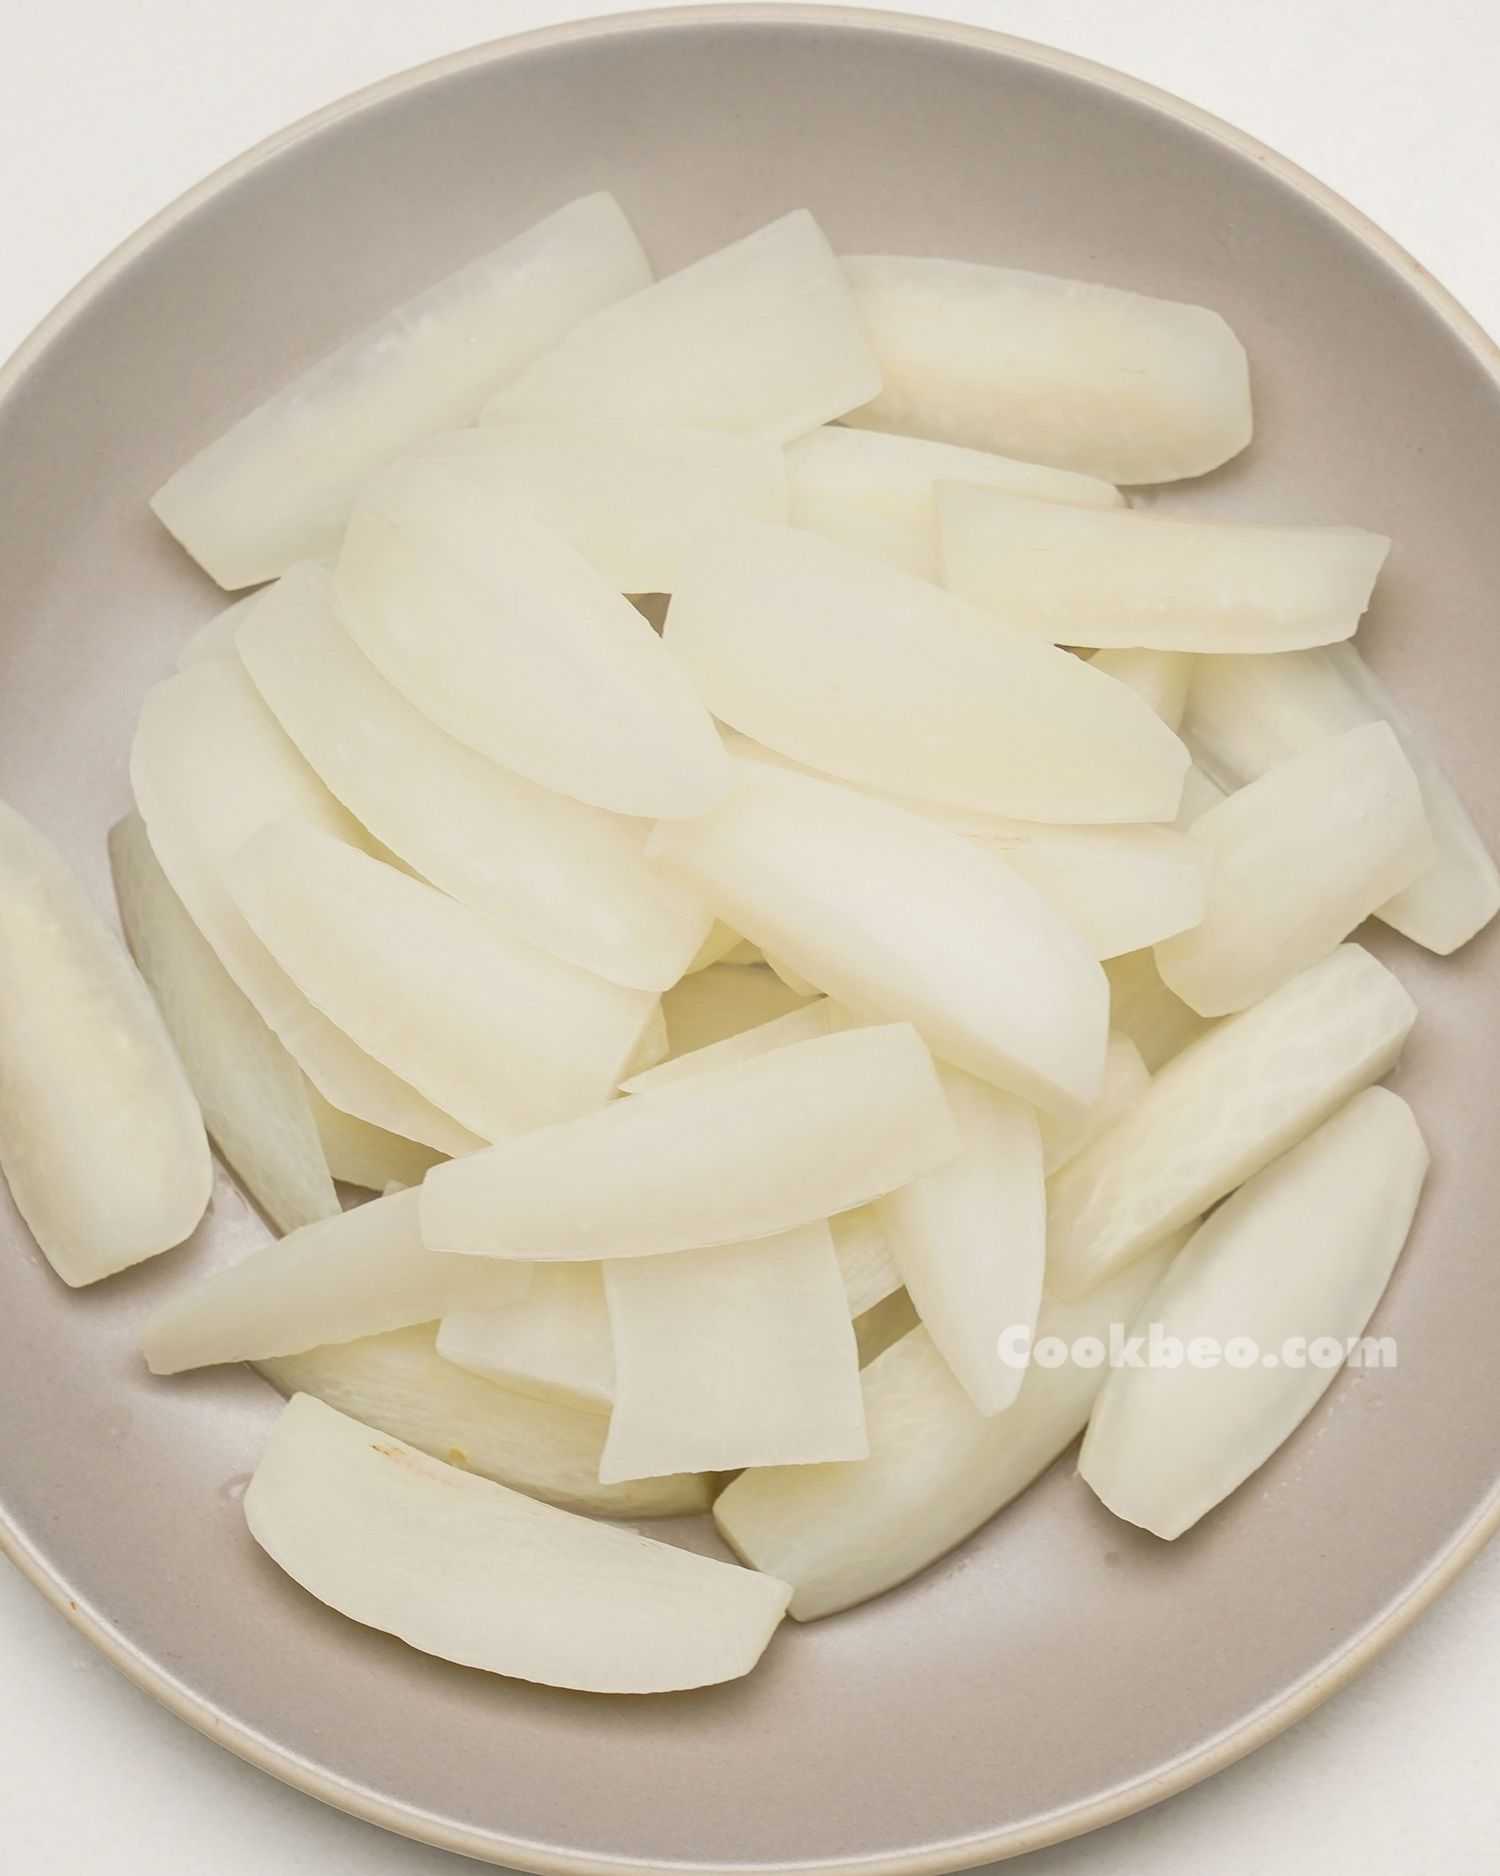 Củ cải White thực hiện những gì ngon? Tổng vừa ý 22 món ăn Tính từ lúc củ cải White mải miết hoặc đơn giản làm